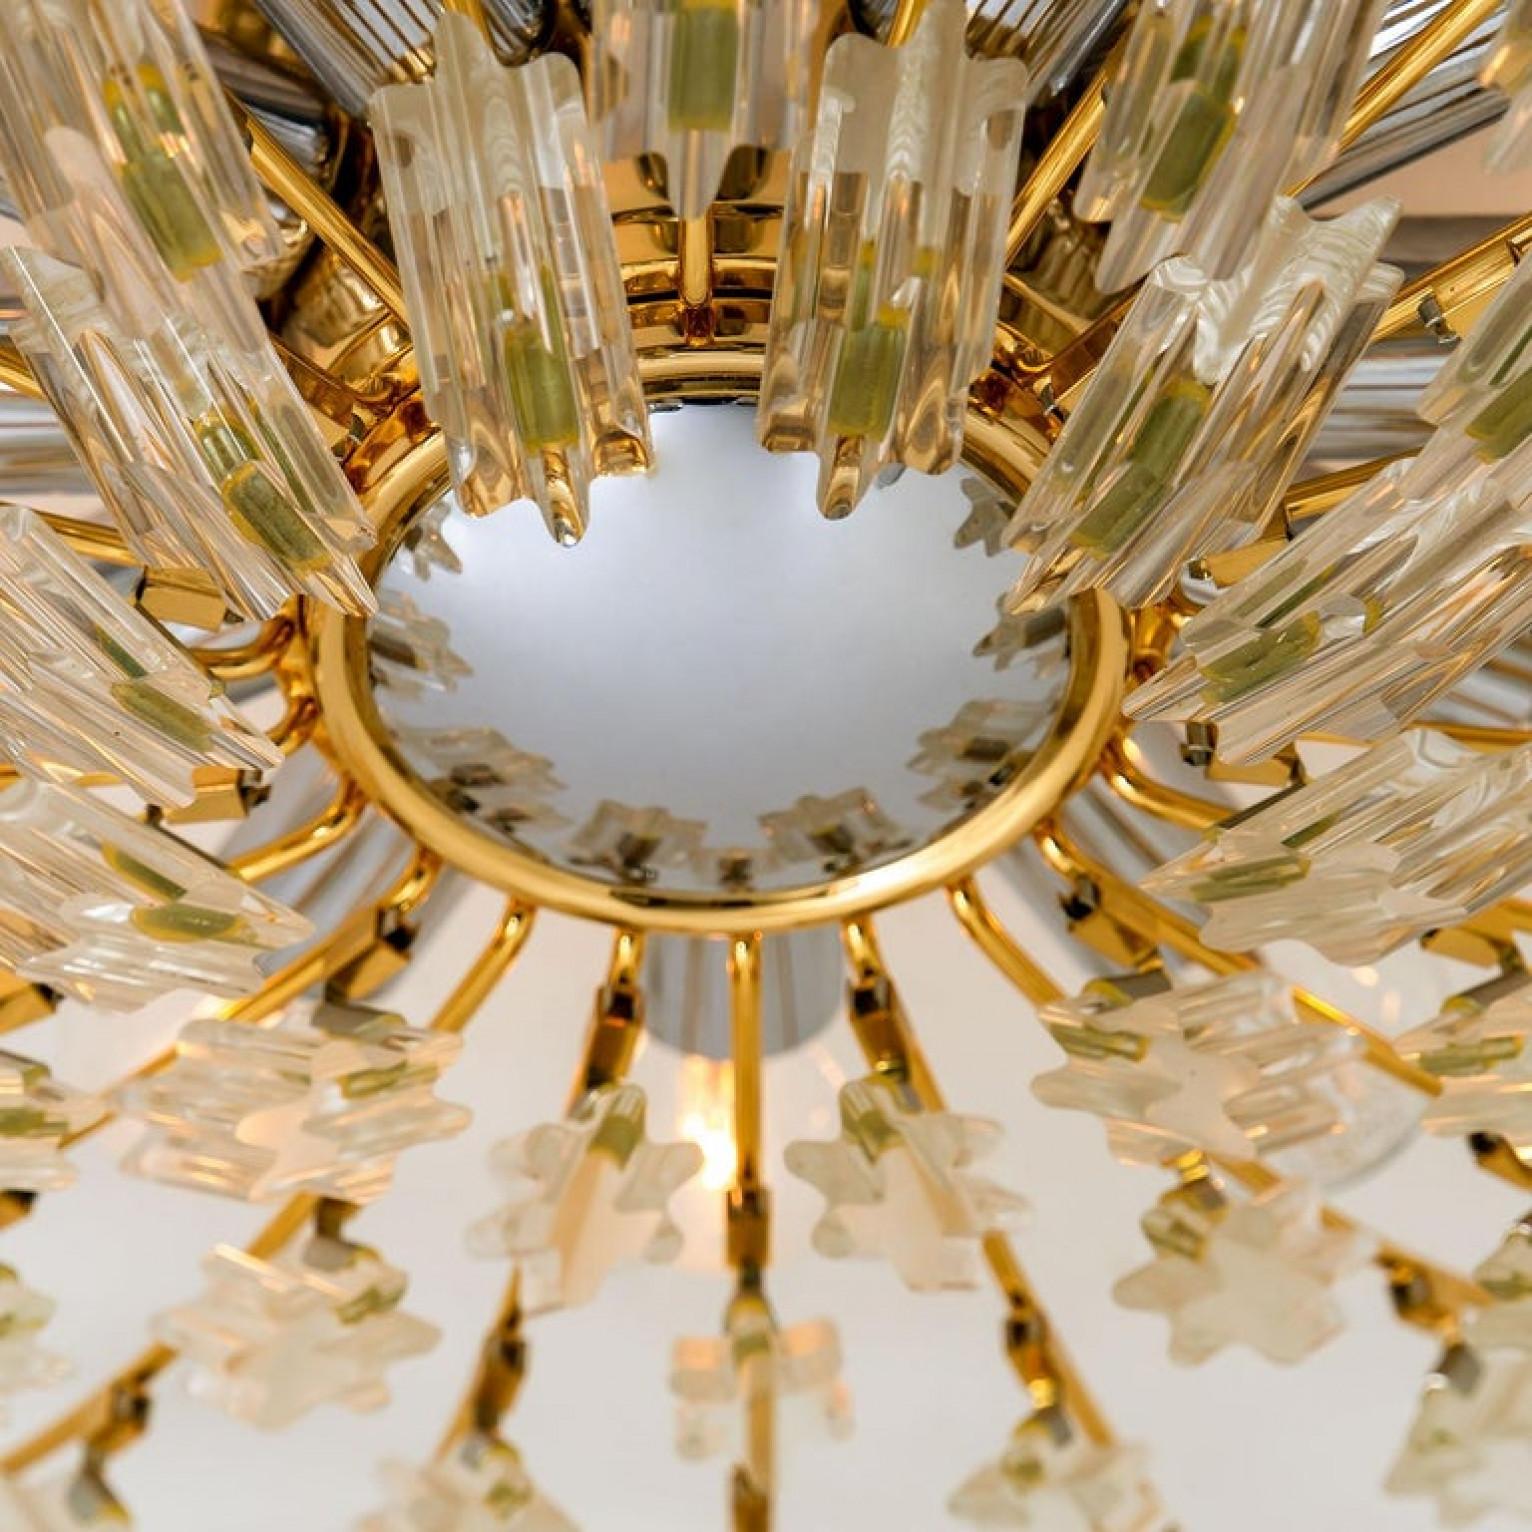 Monture encastrée haut de gamme en laiton doré de Stilkronen, fabriquée en Italie, vers 1975, présentant un ensemble de branches en forme de soleil contenant 30 pièces de cristal clair. Les cristaux réfractent magnifiquement la lumière et sont